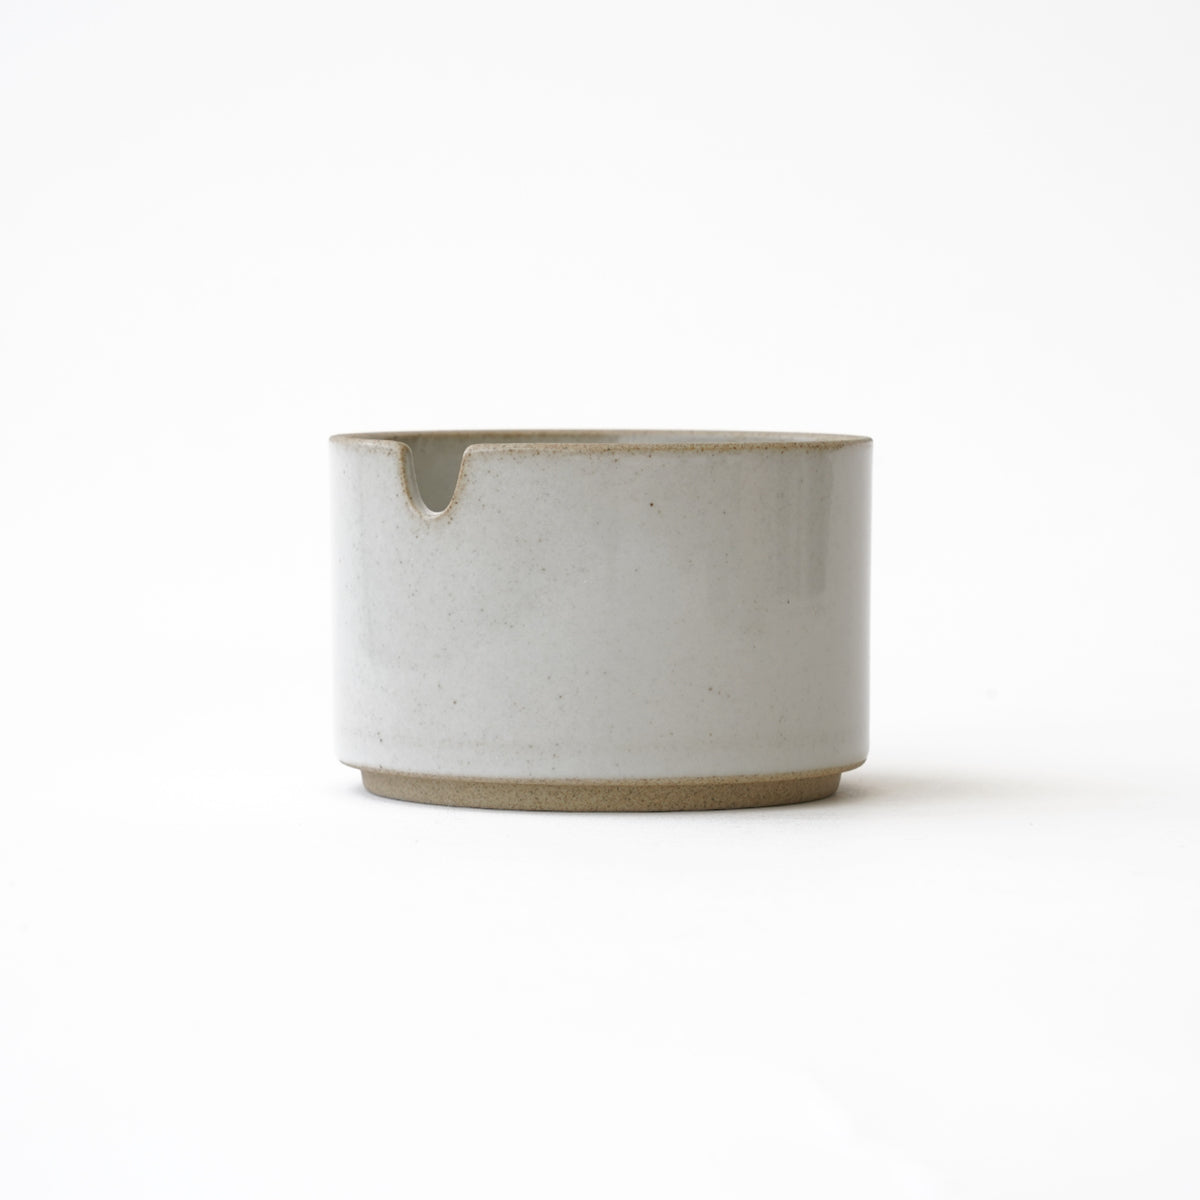 Hasami Porcelain Sugar Pot Gloss Gray